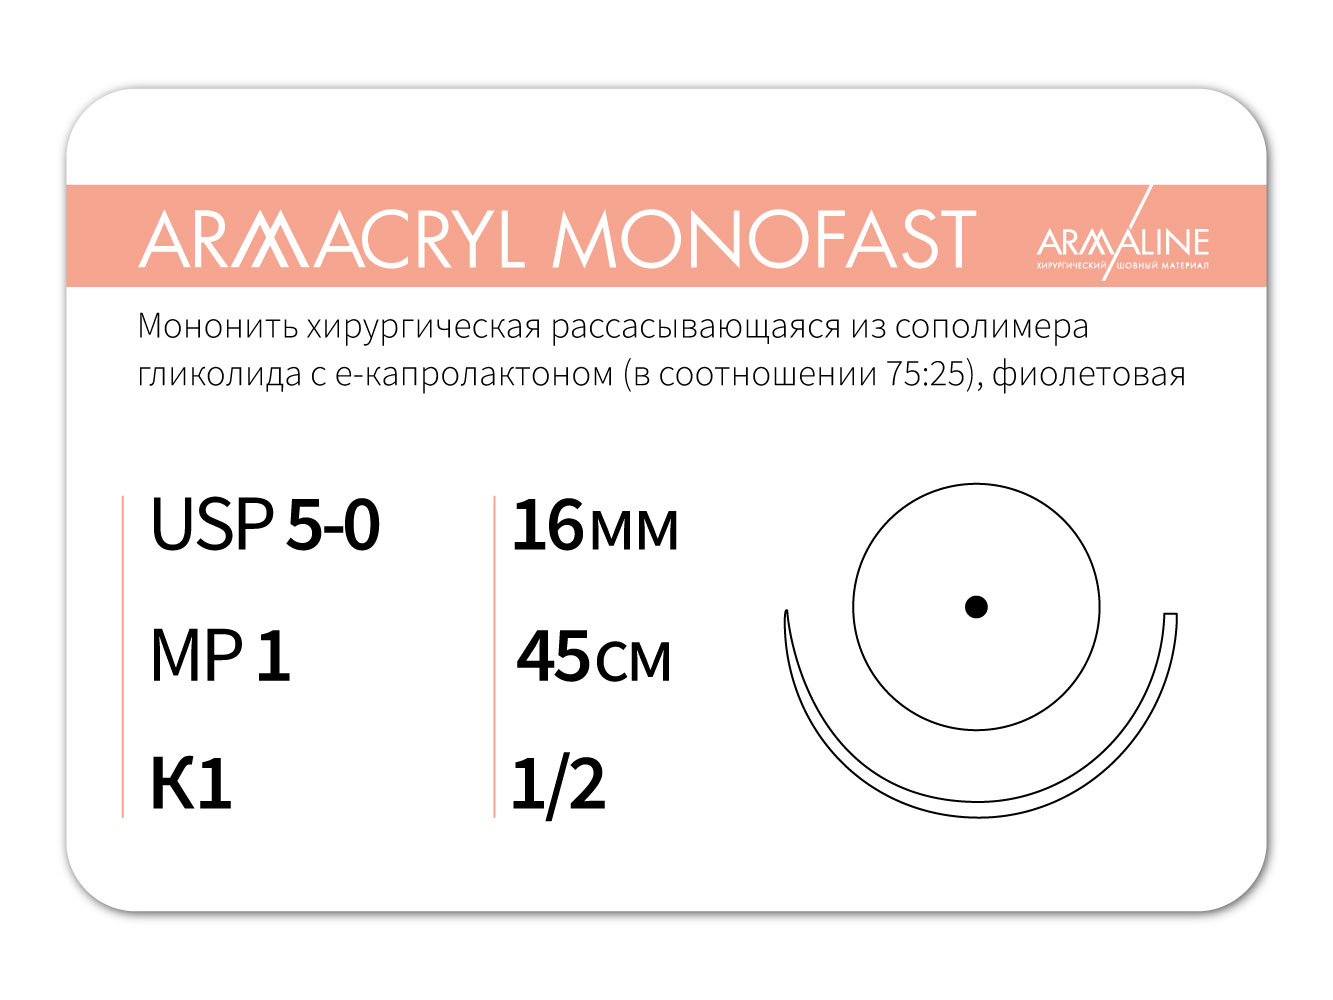 ARMACRYL MONOFAST/Армакрил монофаст (5-0) 45 см - материал хирургический шовный стерильный с атравматической колющей иглой